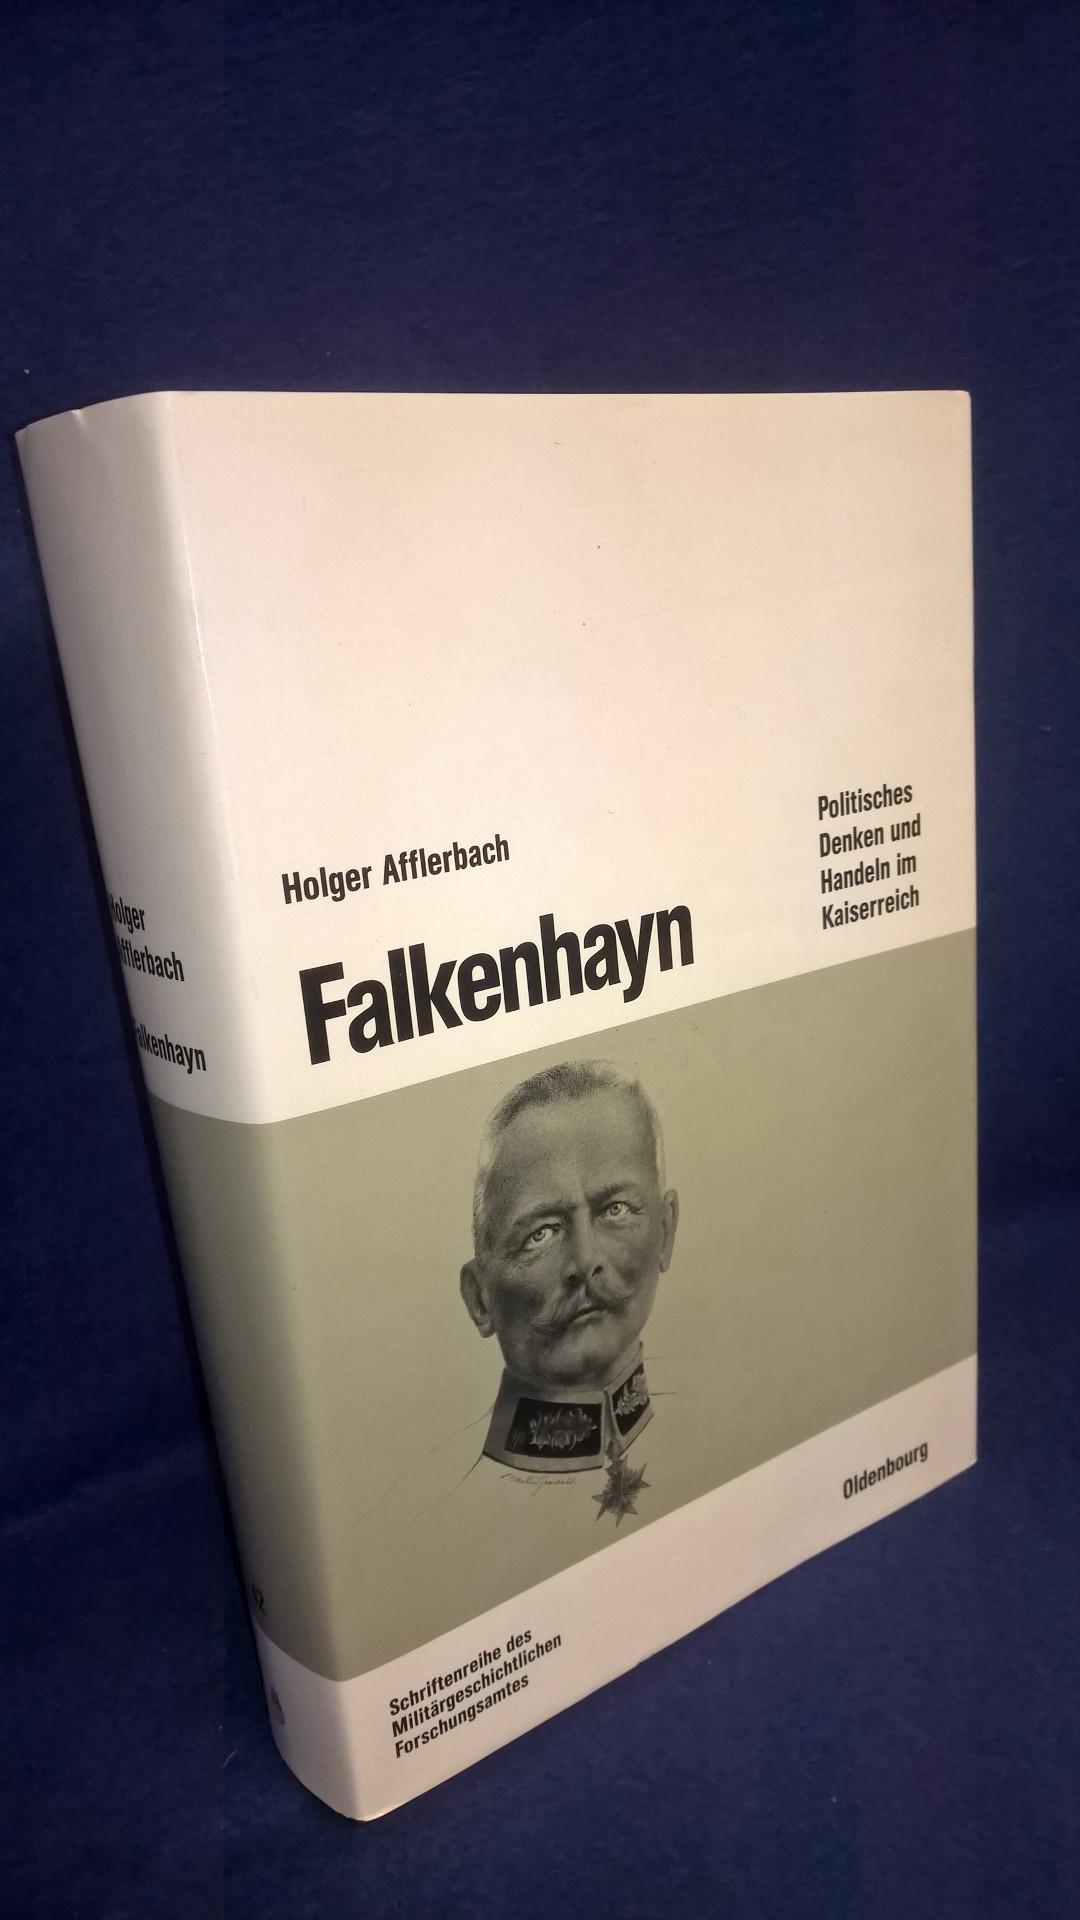 Beiträge zur Militärgeschichte, Band 42: Falkenhayn - Politisches Denken und Handeln im Kaiserreich - 